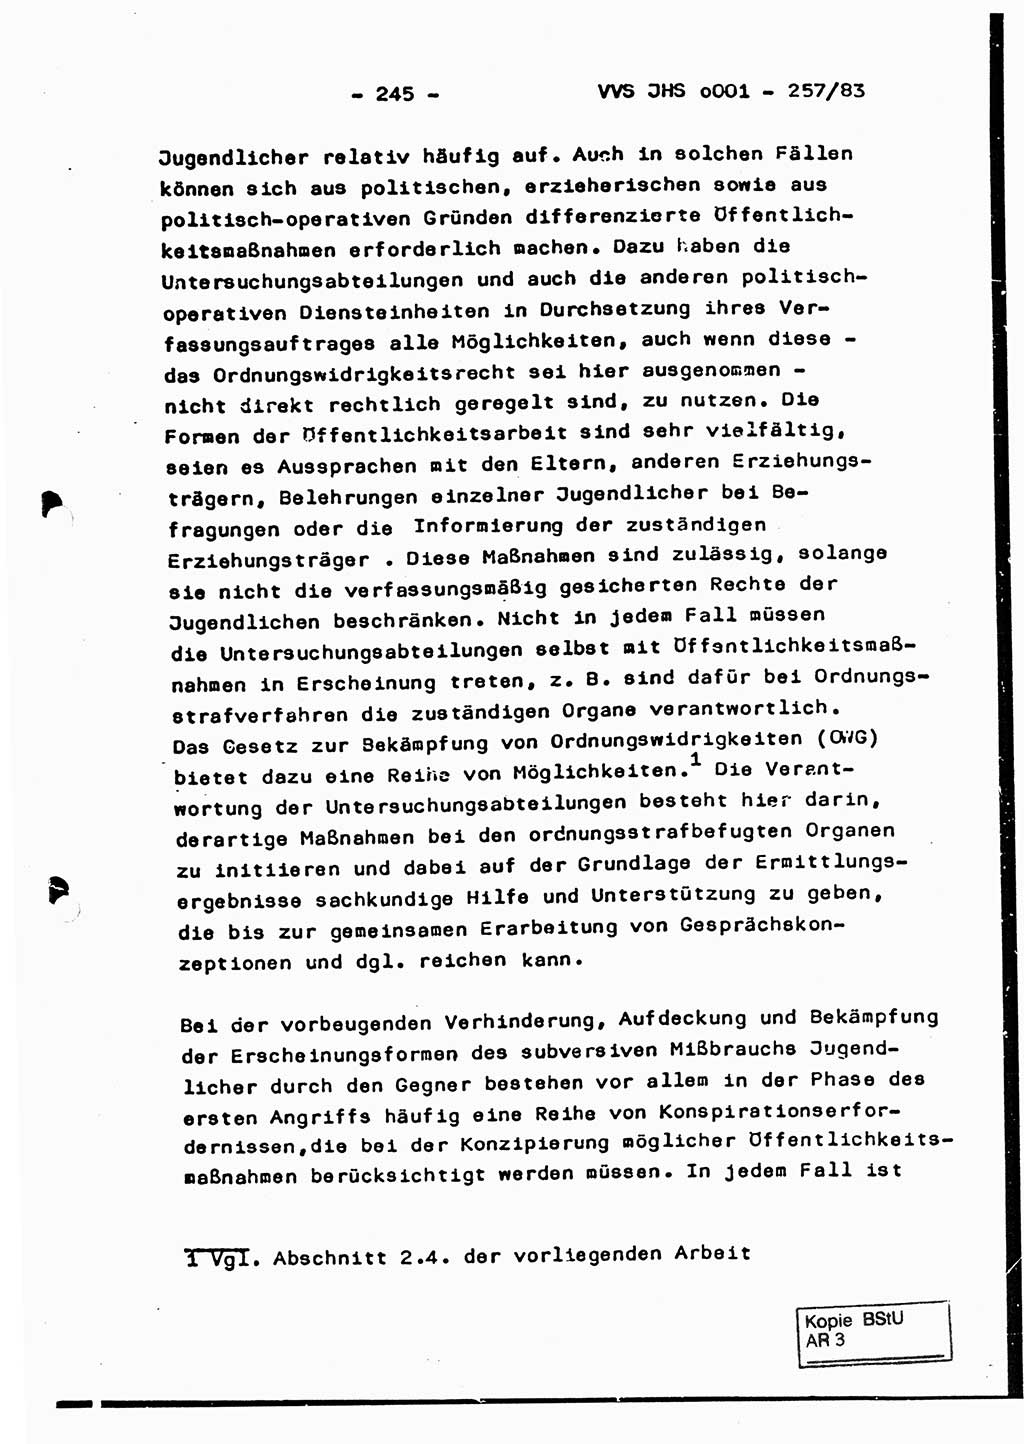 Dissertation, Oberst Helmut Lubas (BV Mdg.), Oberstleutnant Manfred Eschberger (HA IX), Oberleutnant Hans-Jürgen Ludwig (JHS), Ministerium für Staatssicherheit (MfS) [Deutsche Demokratische Republik (DDR)], Juristische Hochschule (JHS), Vertrauliche Verschlußsache (VVS) o001-257/83, Potsdam 1983, Seite 245 (Diss. MfS DDR JHS VVS o001-257/83 1983, S. 245)